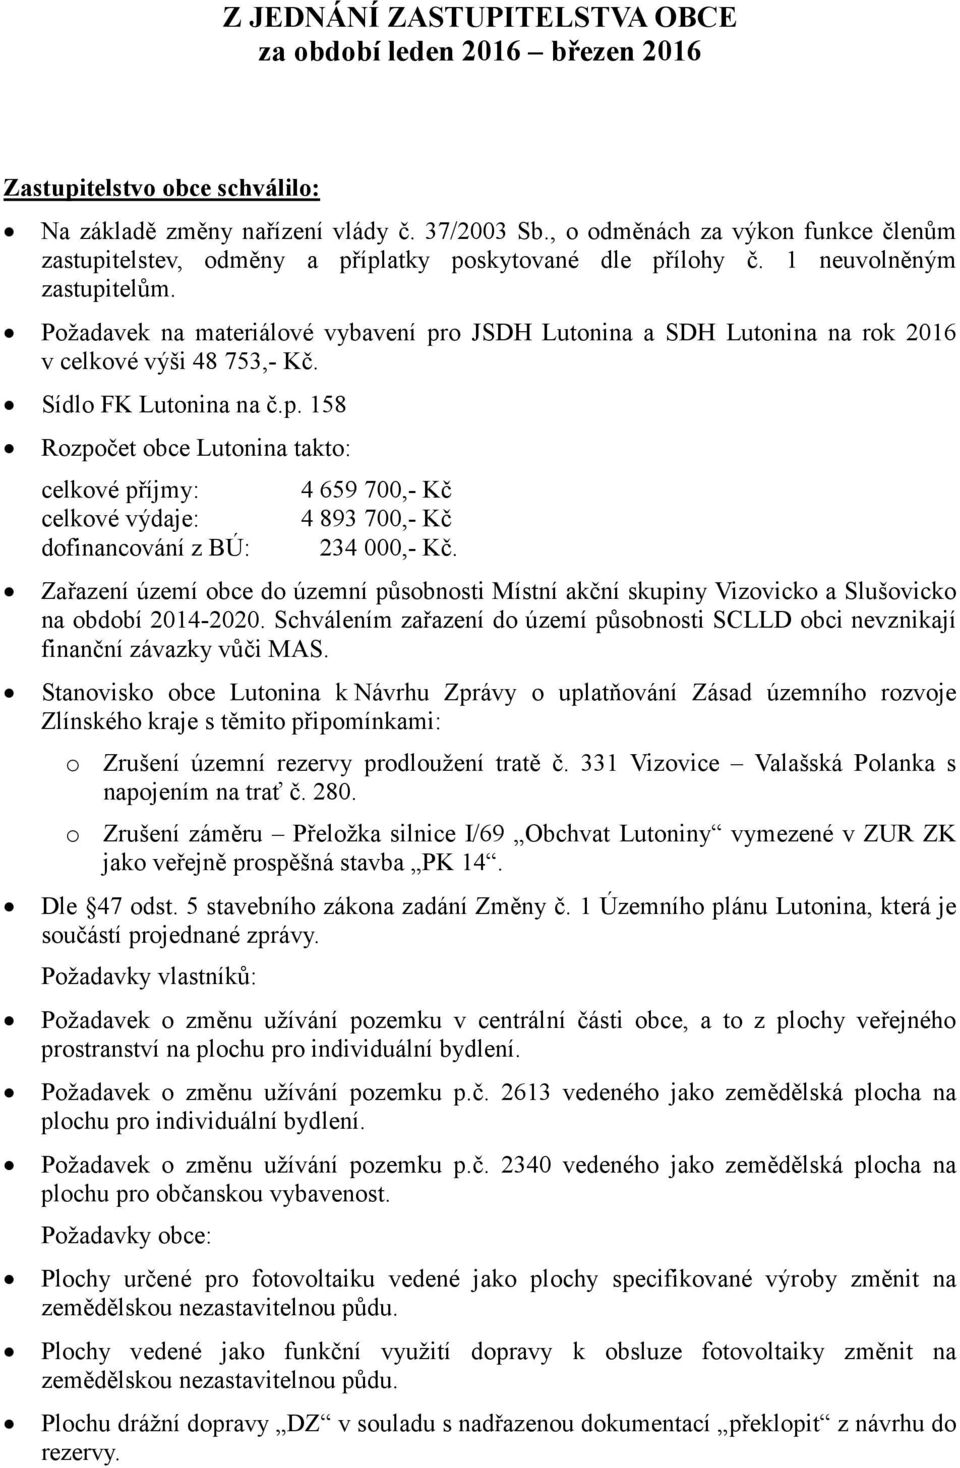 Požadavek na materiálové vybavení pro JSDH Lutonina a SDH Lutonina na rok 2016 v celkové výši 48 753,- Kč. Sídlo FK Lutonina na č.p. 158 Rozpočet obce Lutonina takto: celkové příjmy: celkové výdaje: dofinancování z BÚ: 4 659 700,- Kč 4 893 700,- Kč 234 000,- Kč.